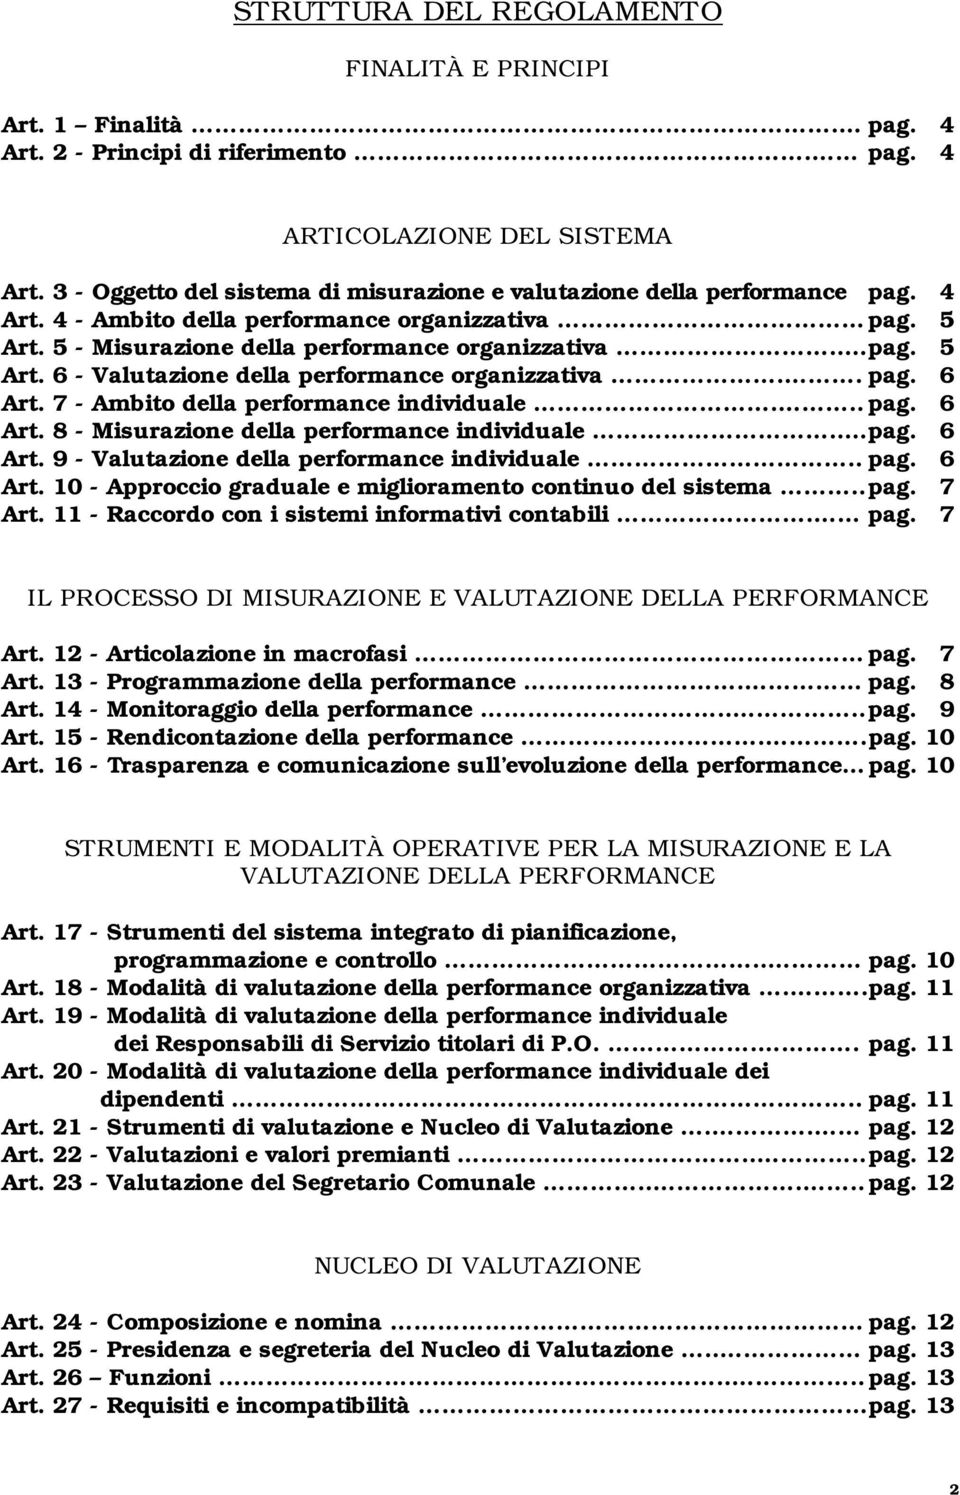 . pag. 6 Art. 7 - Ambito della performance individuale... pag. 6 Art. 8 - Misurazione della performance individuale... pag. 6 Art. 9 - Valutazione della performance individuale.. pag. 6 Art. 10 - Approccio graduale e miglioramento continuo del sistema.